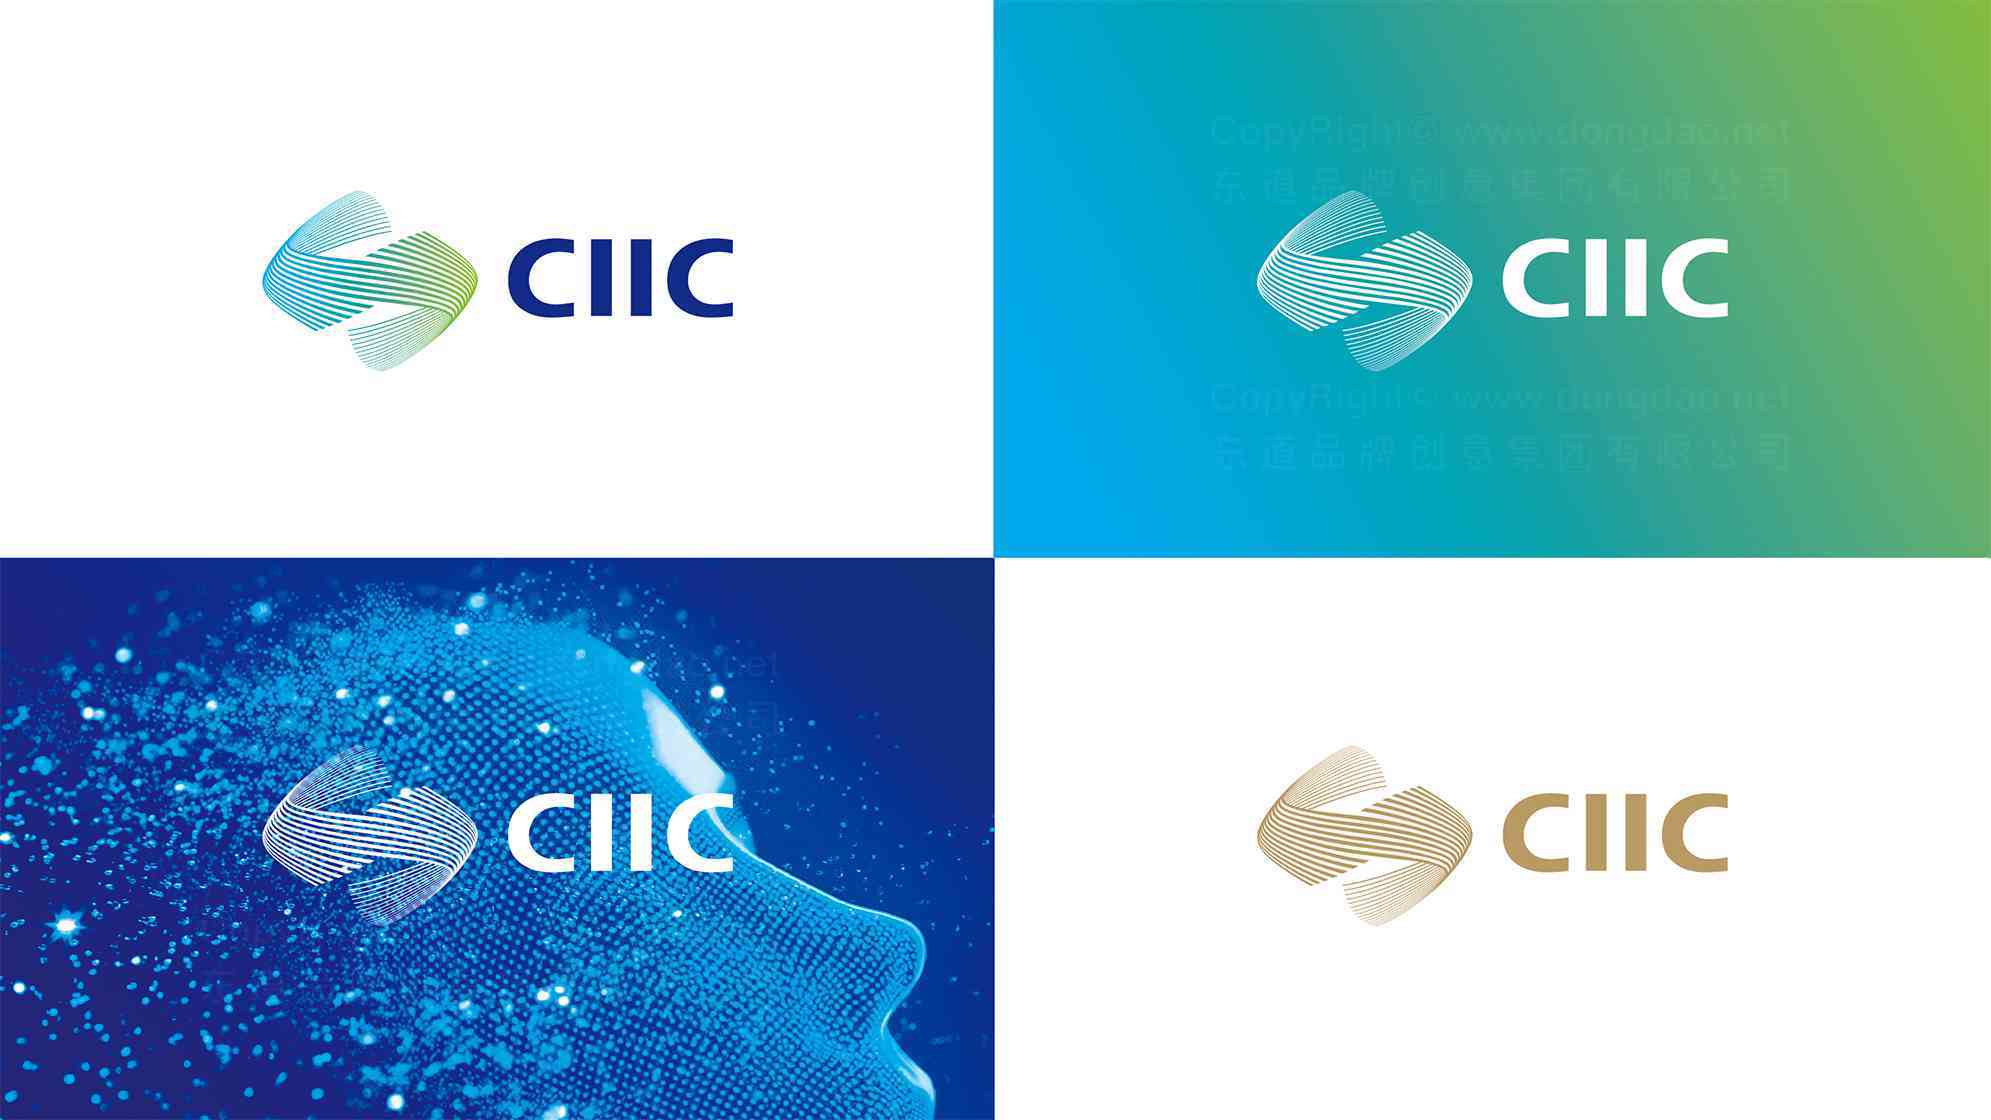 中国工业互联网大赛logo设计图片素材